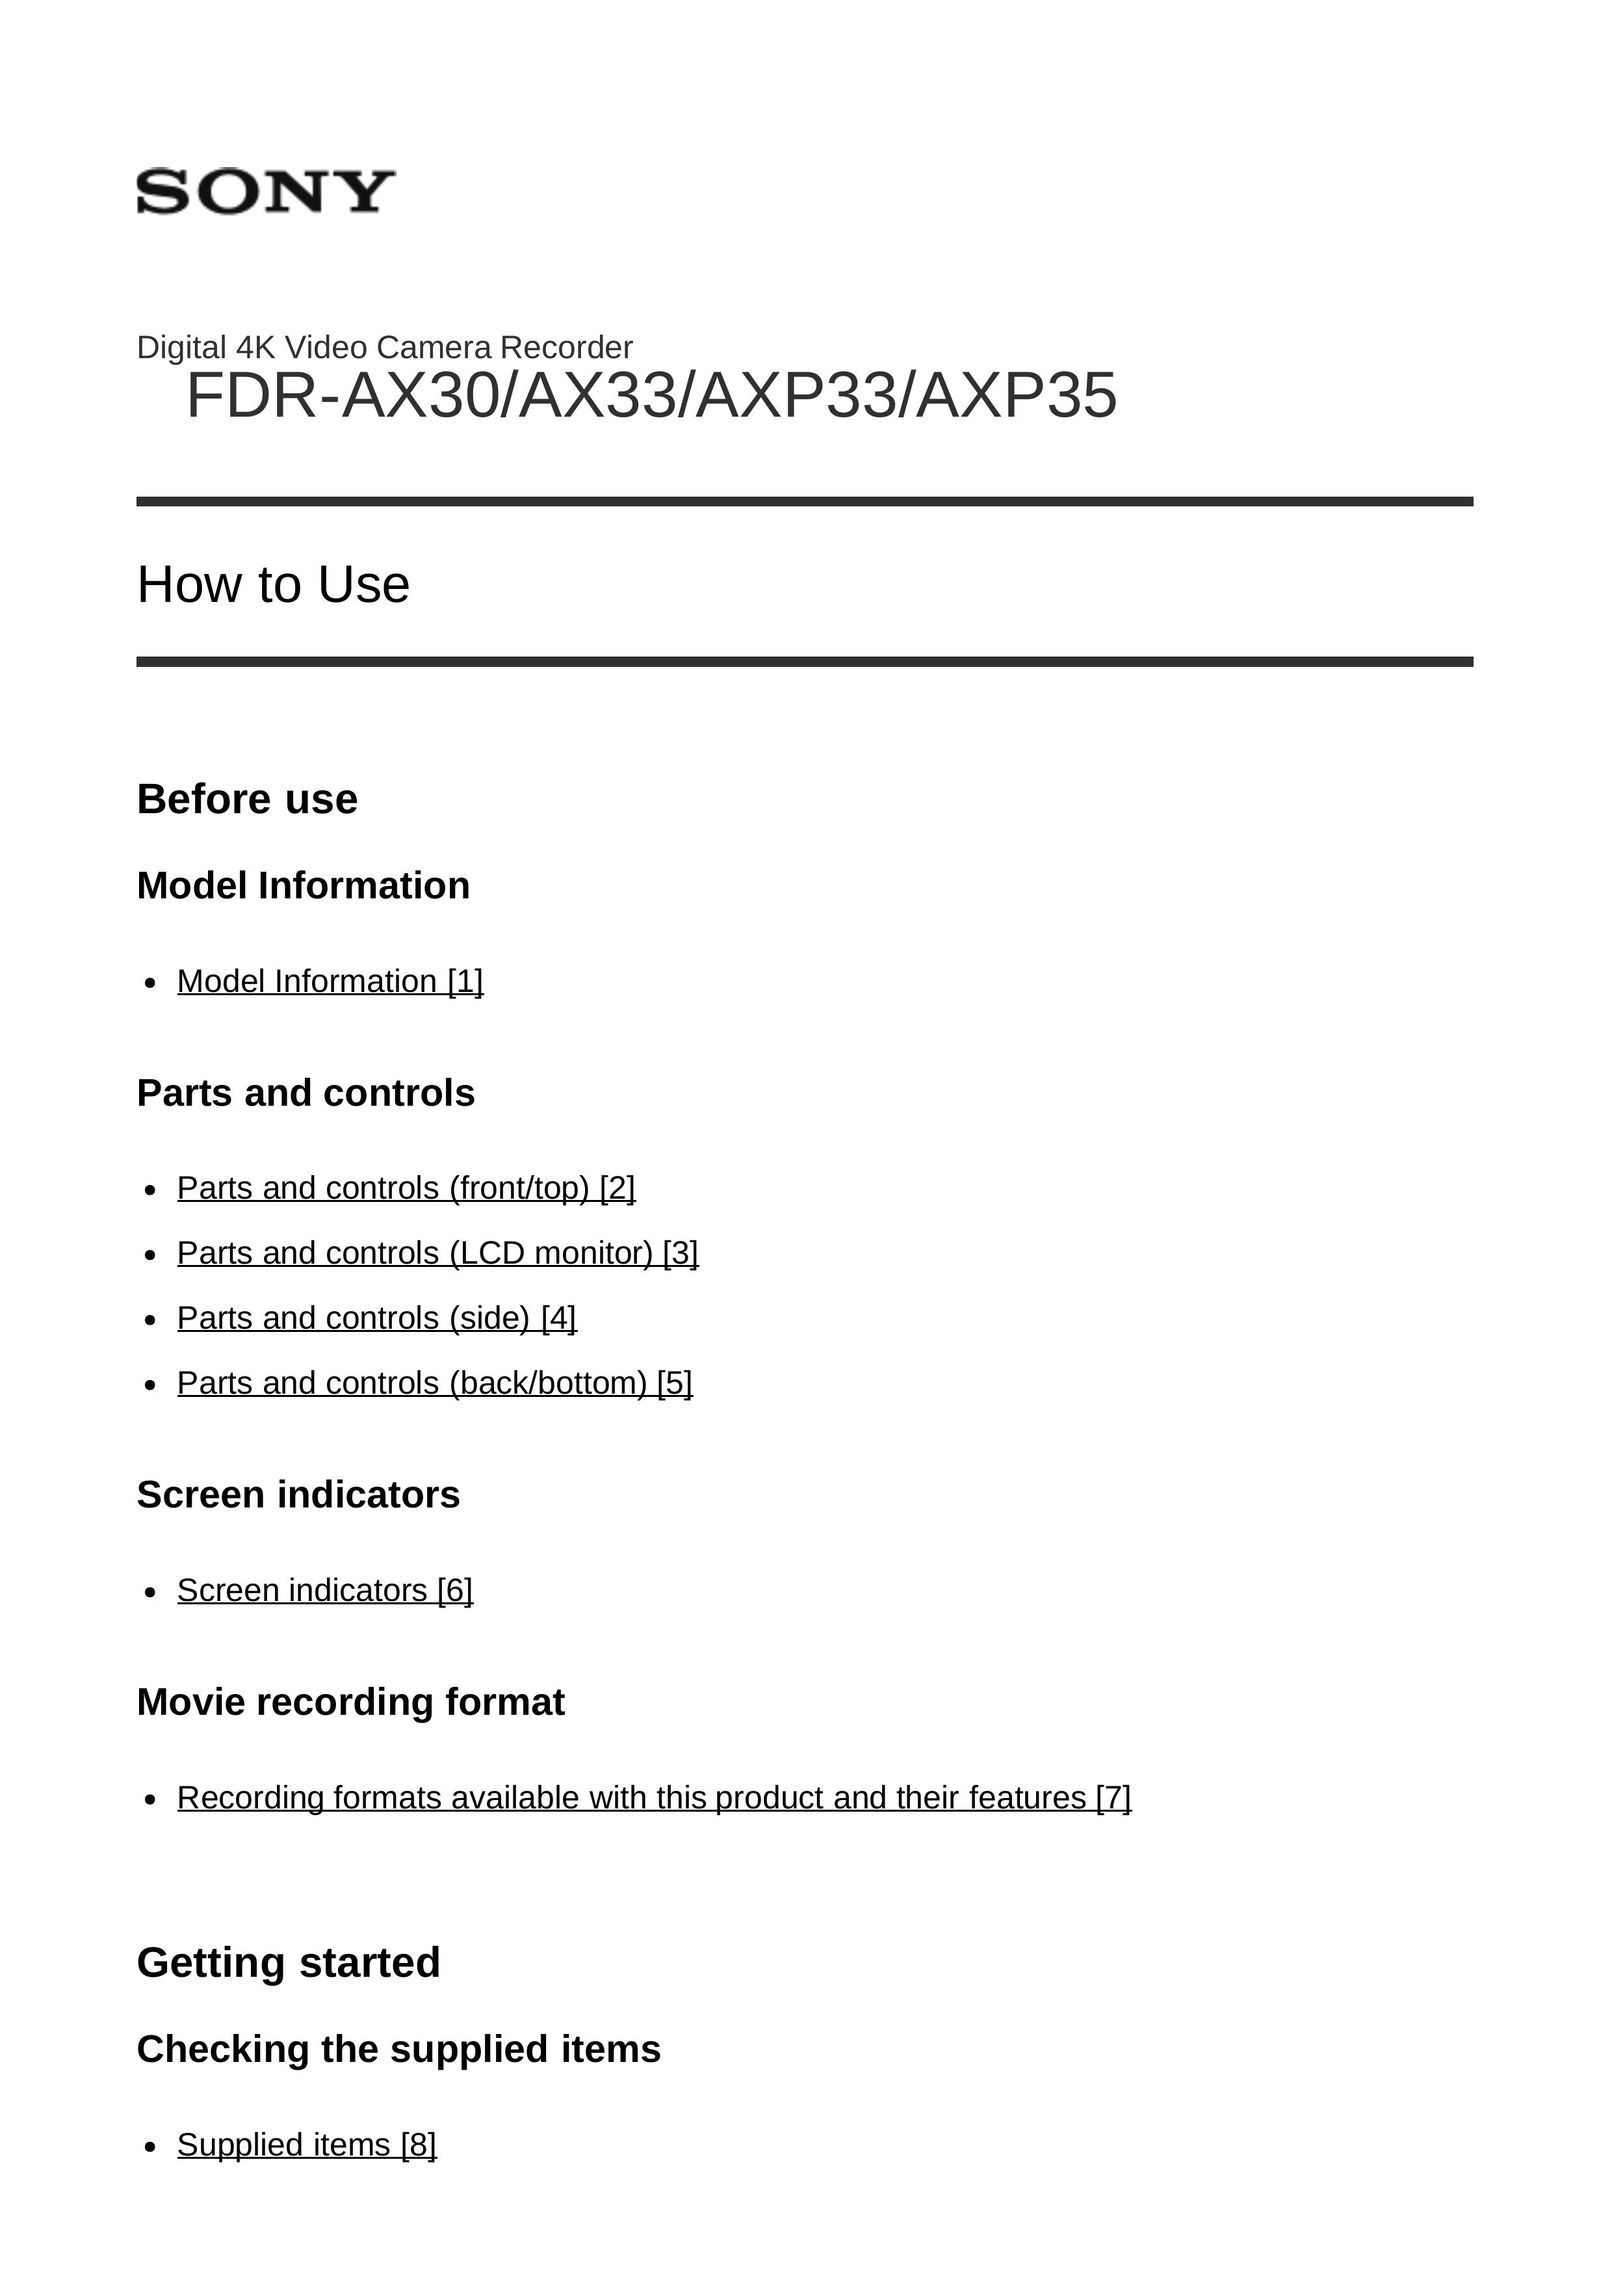 Sony axp35 DVR User Manual